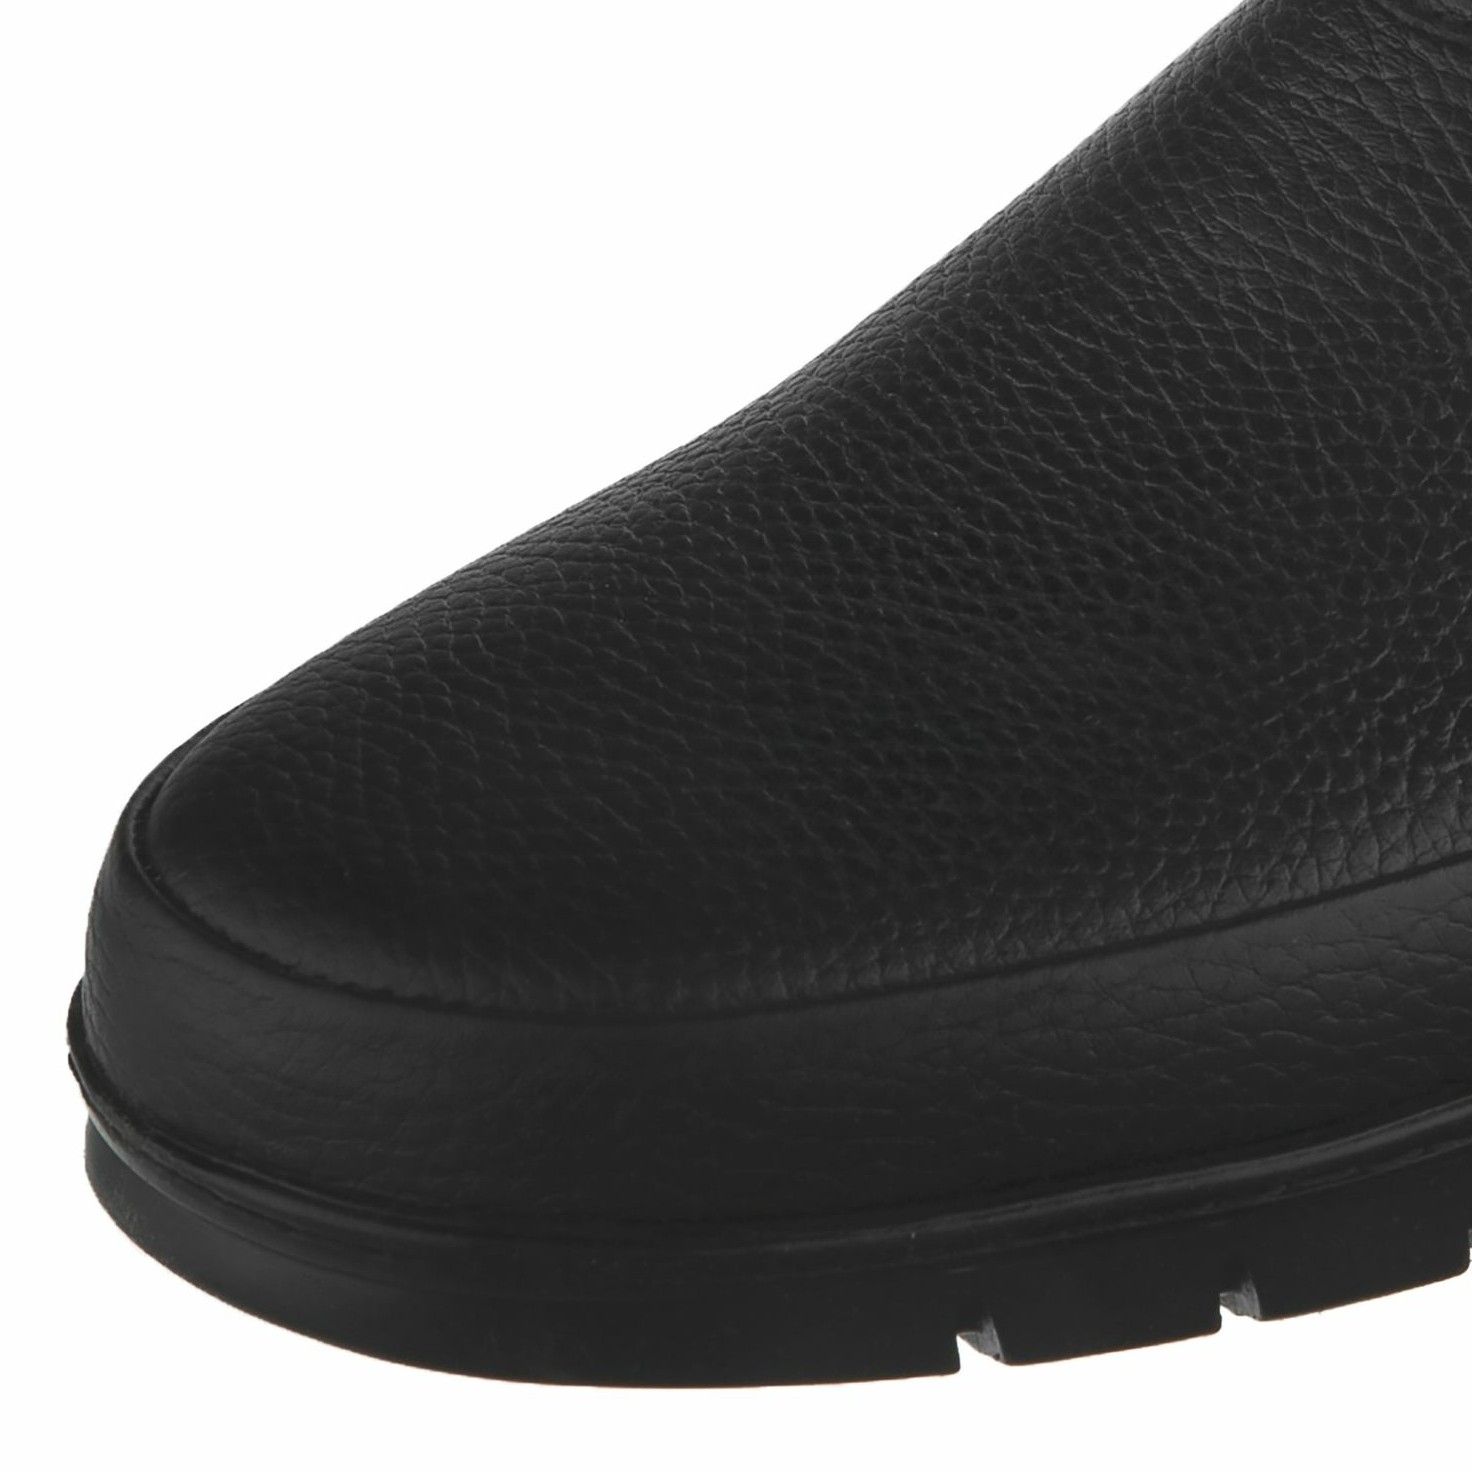 کفش روزمره مردانه سوته مدل چرم طبیعی کد F503101 -  - 4